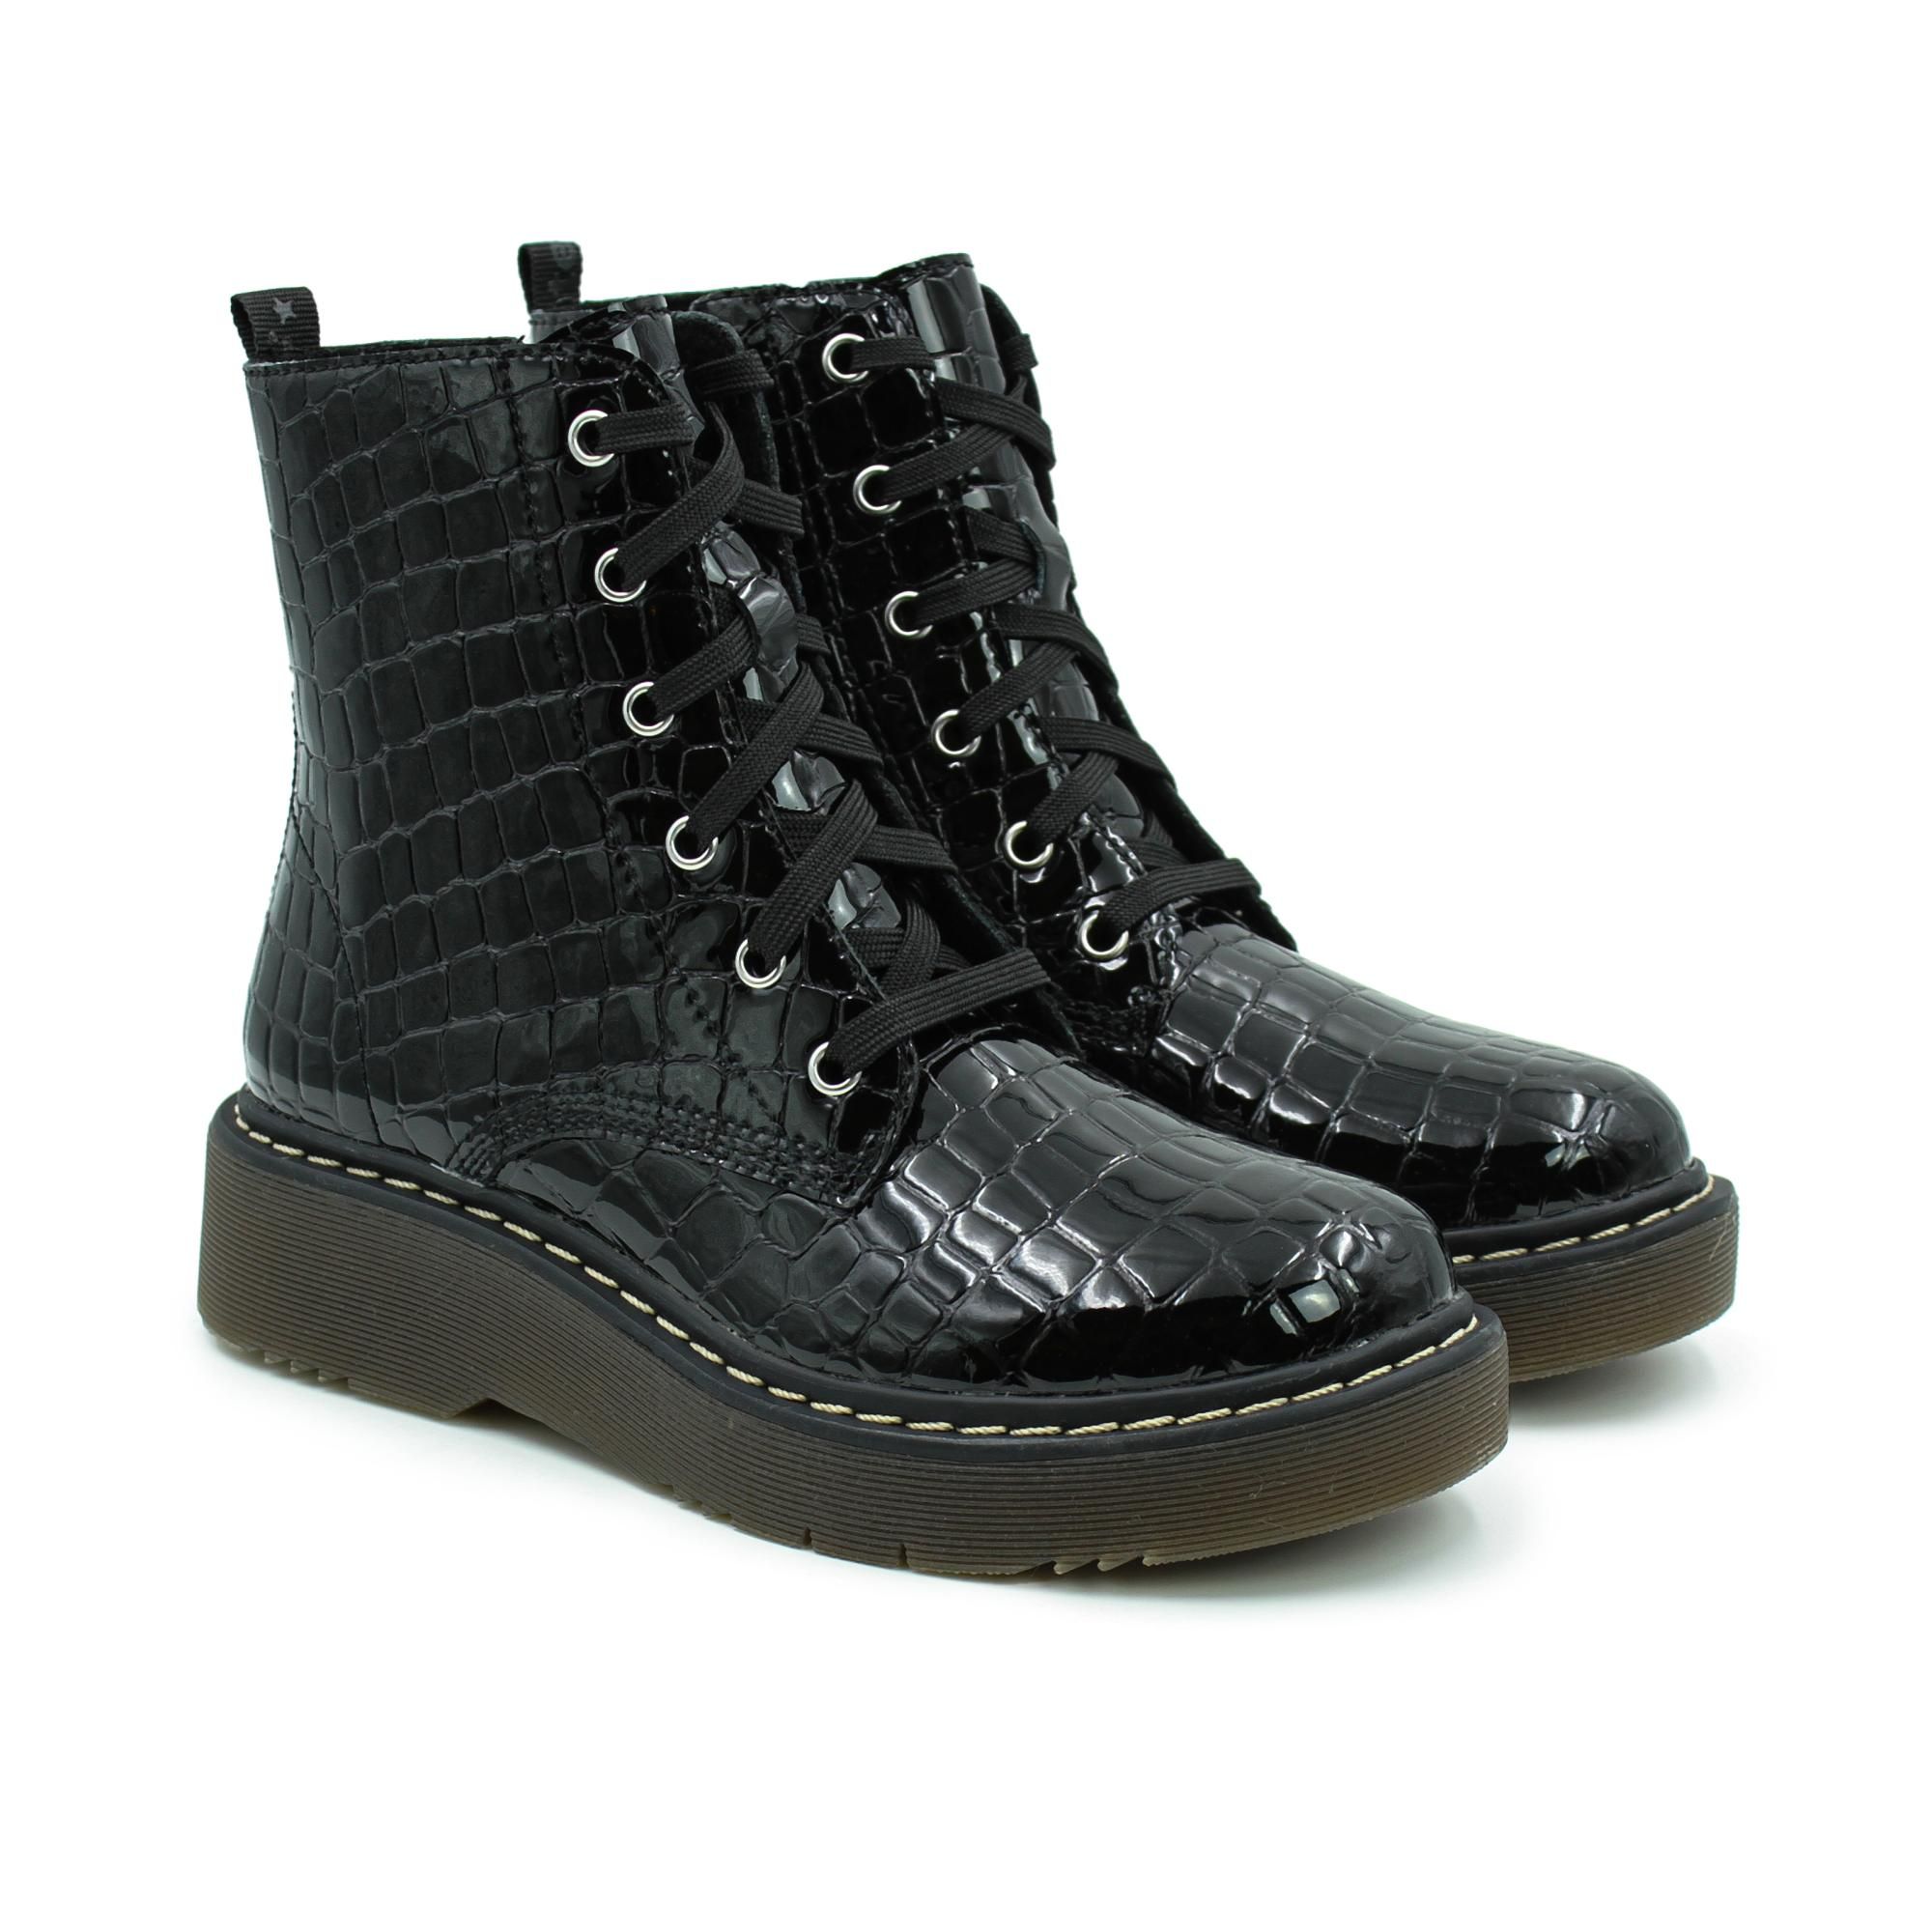 Ботинки Richter Prisma 2 boot 4650-2141-9900 цв. черный р. 34